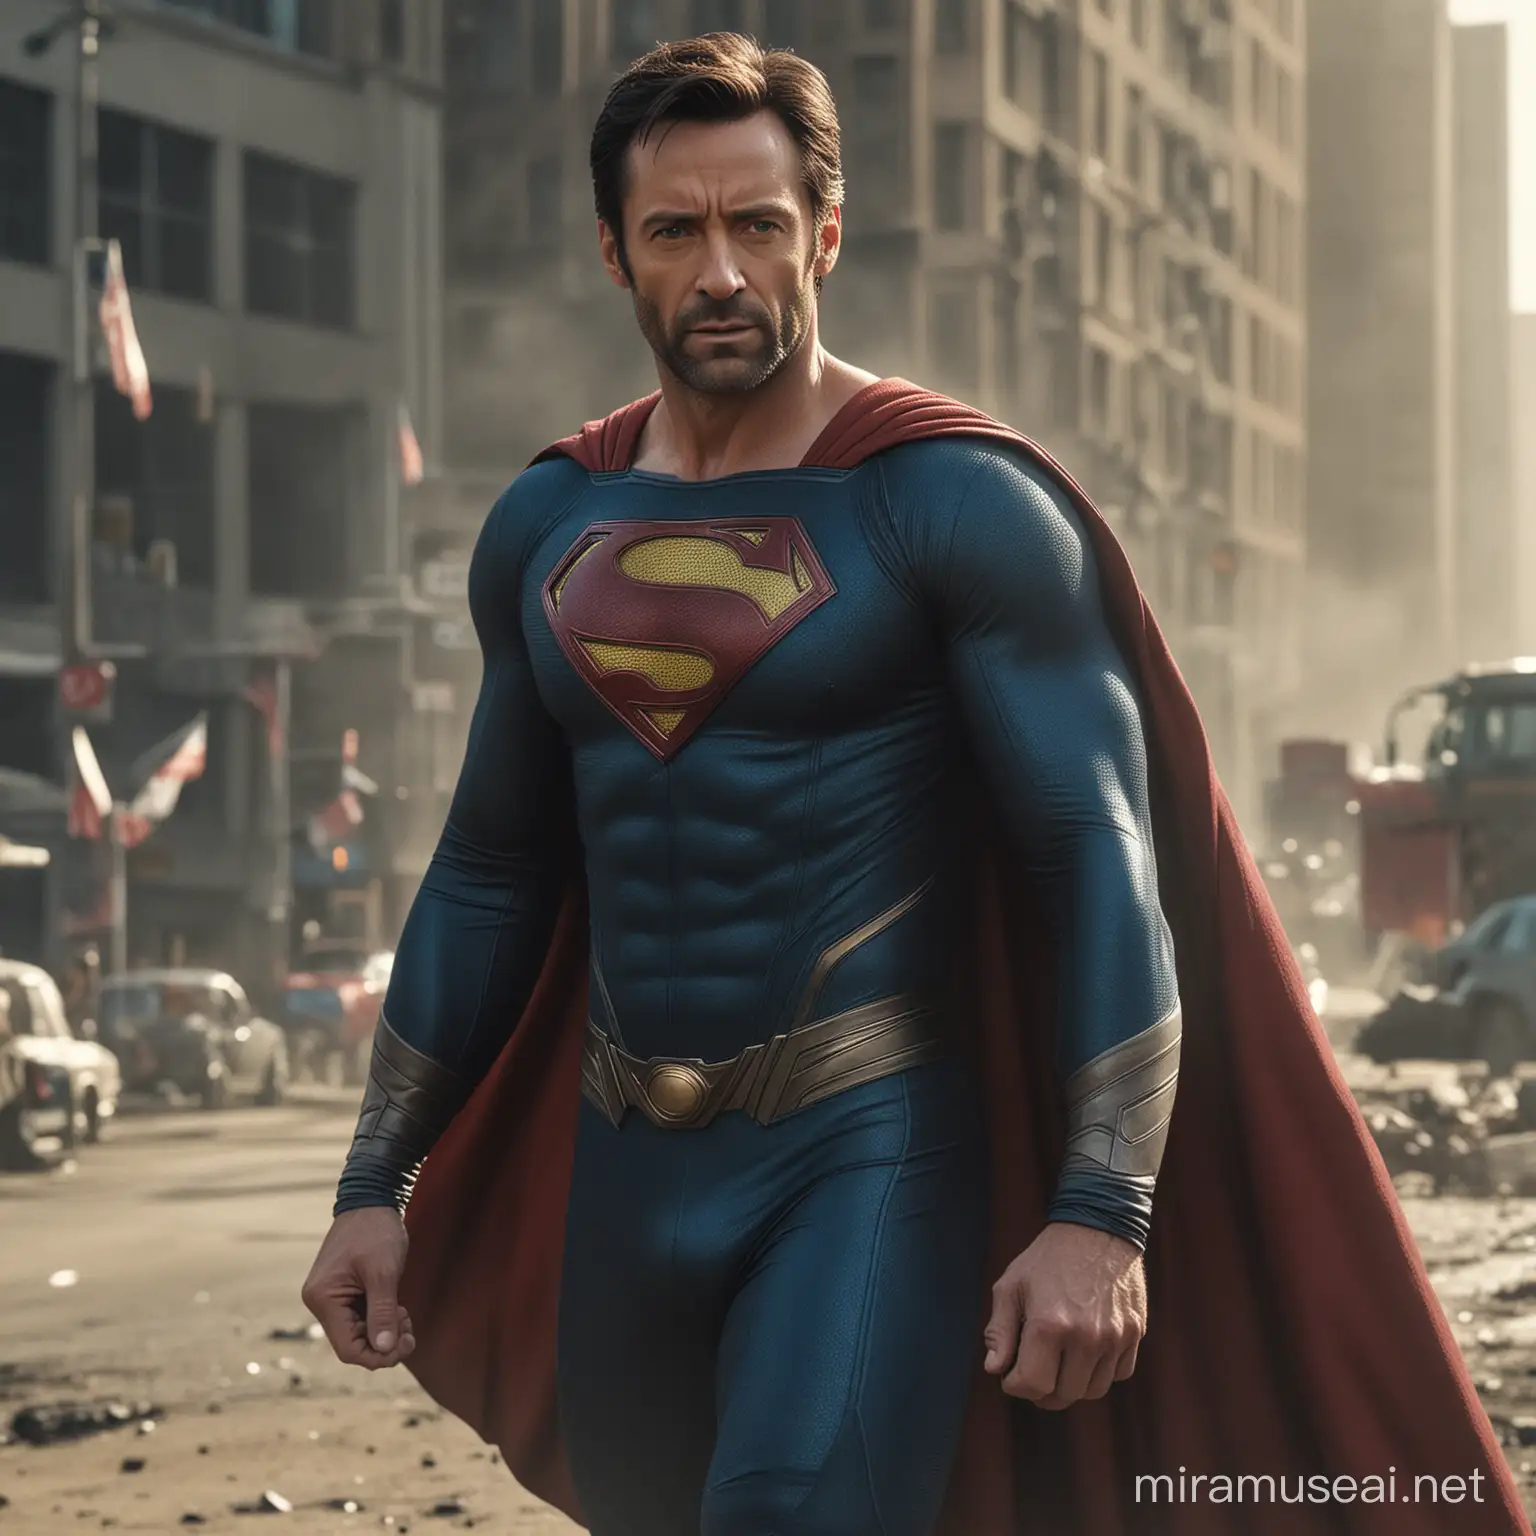 Hugh Jackman as Superman Cinematic 8K Portrait